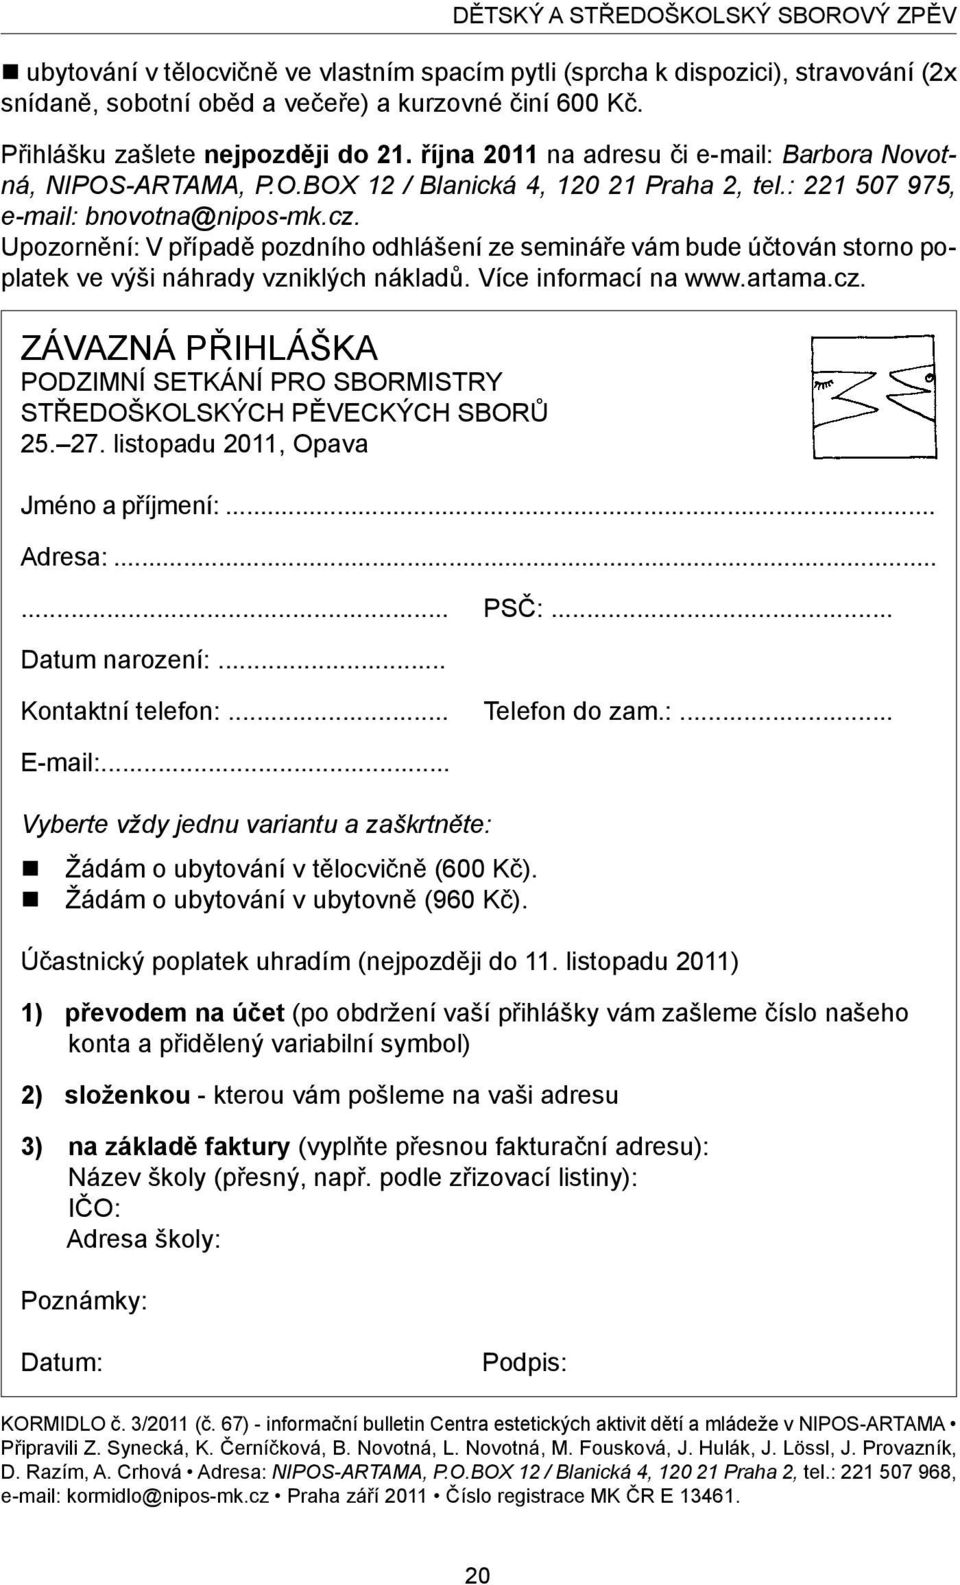 Přihlášku zašlete nejpozději do 21. října 2011 na adresu či e-mail: Barbora Novotná, NIPOS-ARTAMA, P.O.BOX 12 / Blanická 4, 120 21 Praha 2, tel.: 221 507 975, e-mail: bnovotna@nipos-mk.cz.